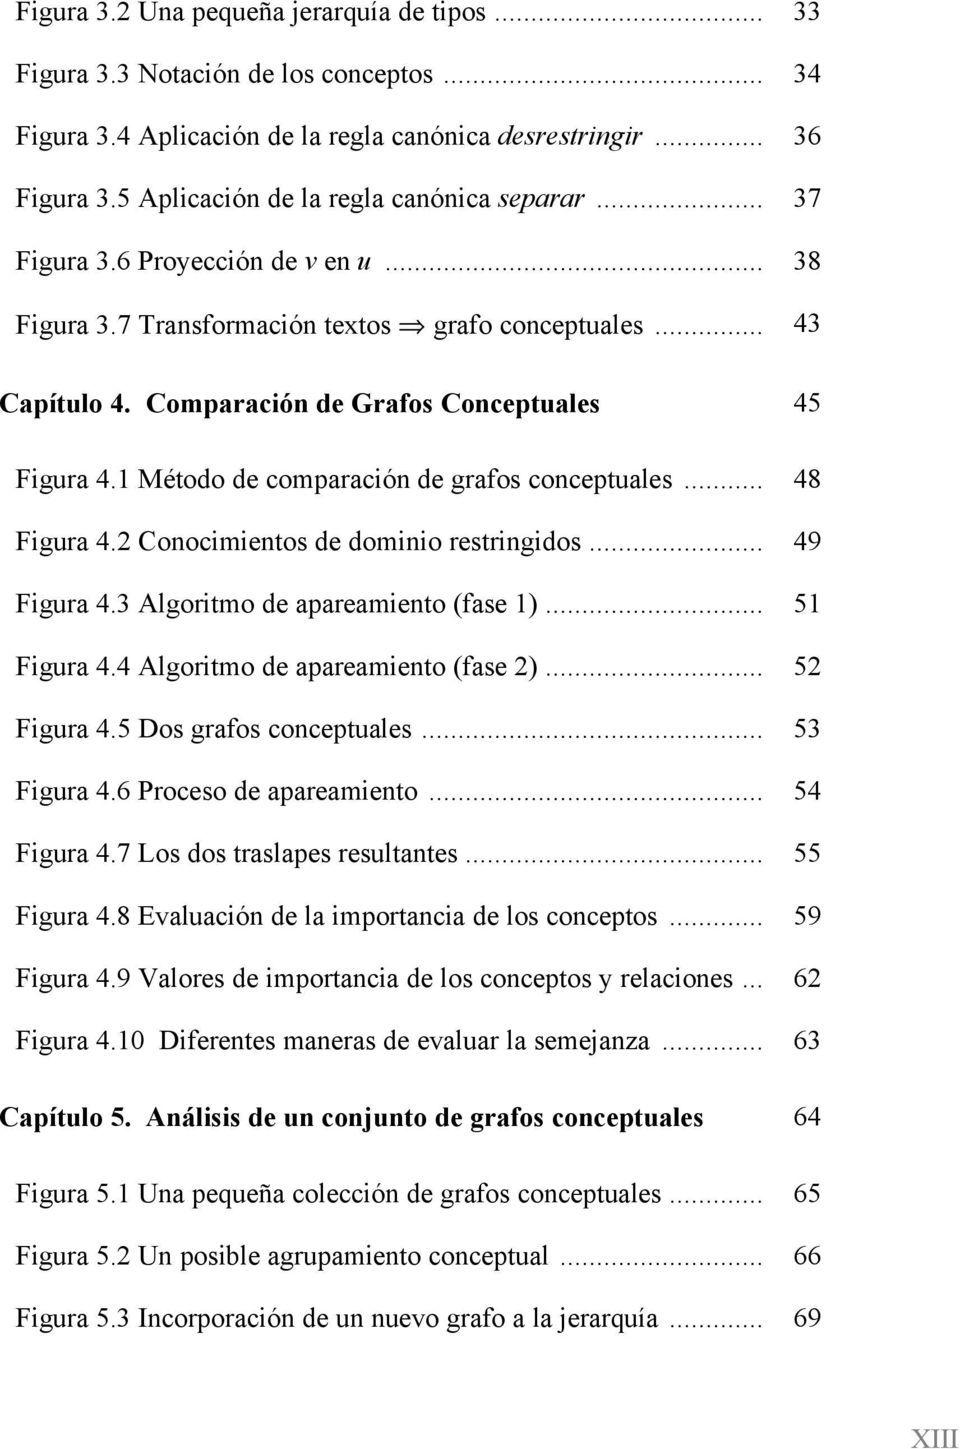 1 Método de comparación de grafos conceptuales... Figura 4.2 Conocimientos de dominio restringidos... Figura 4.3 Algoritmo de apareamiento (fase 1)... Figura 4.4 Algoritmo de apareamiento (fase 2).